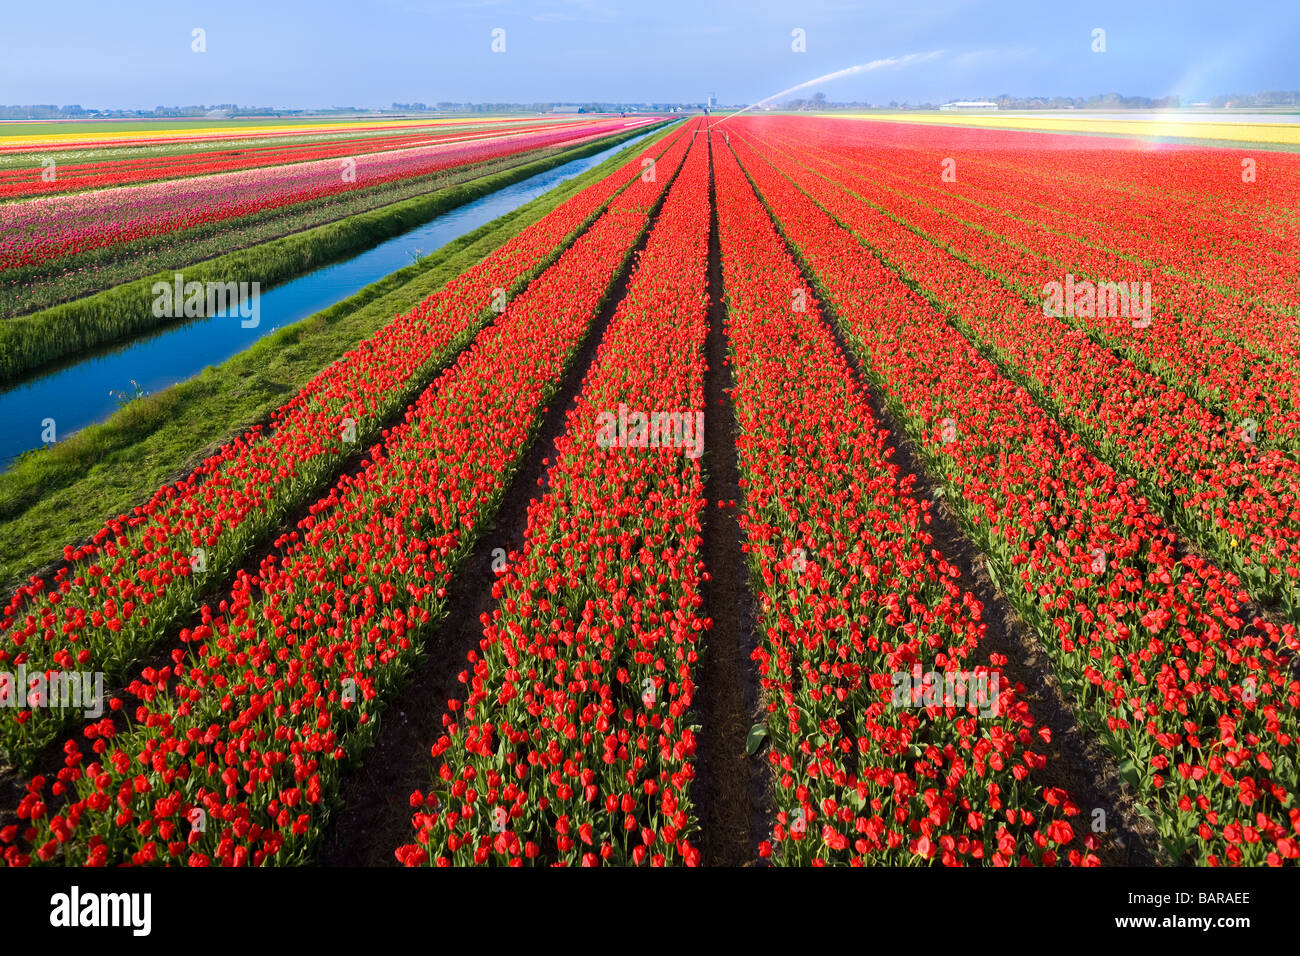 Tulipani olandesi, i campi di tulipani in righe vicino a Alkmaar, Olanda, con canal e soffione di erogazione dell'acqua per irrigazione. Paesi Bassi Nederland. Foto Stock